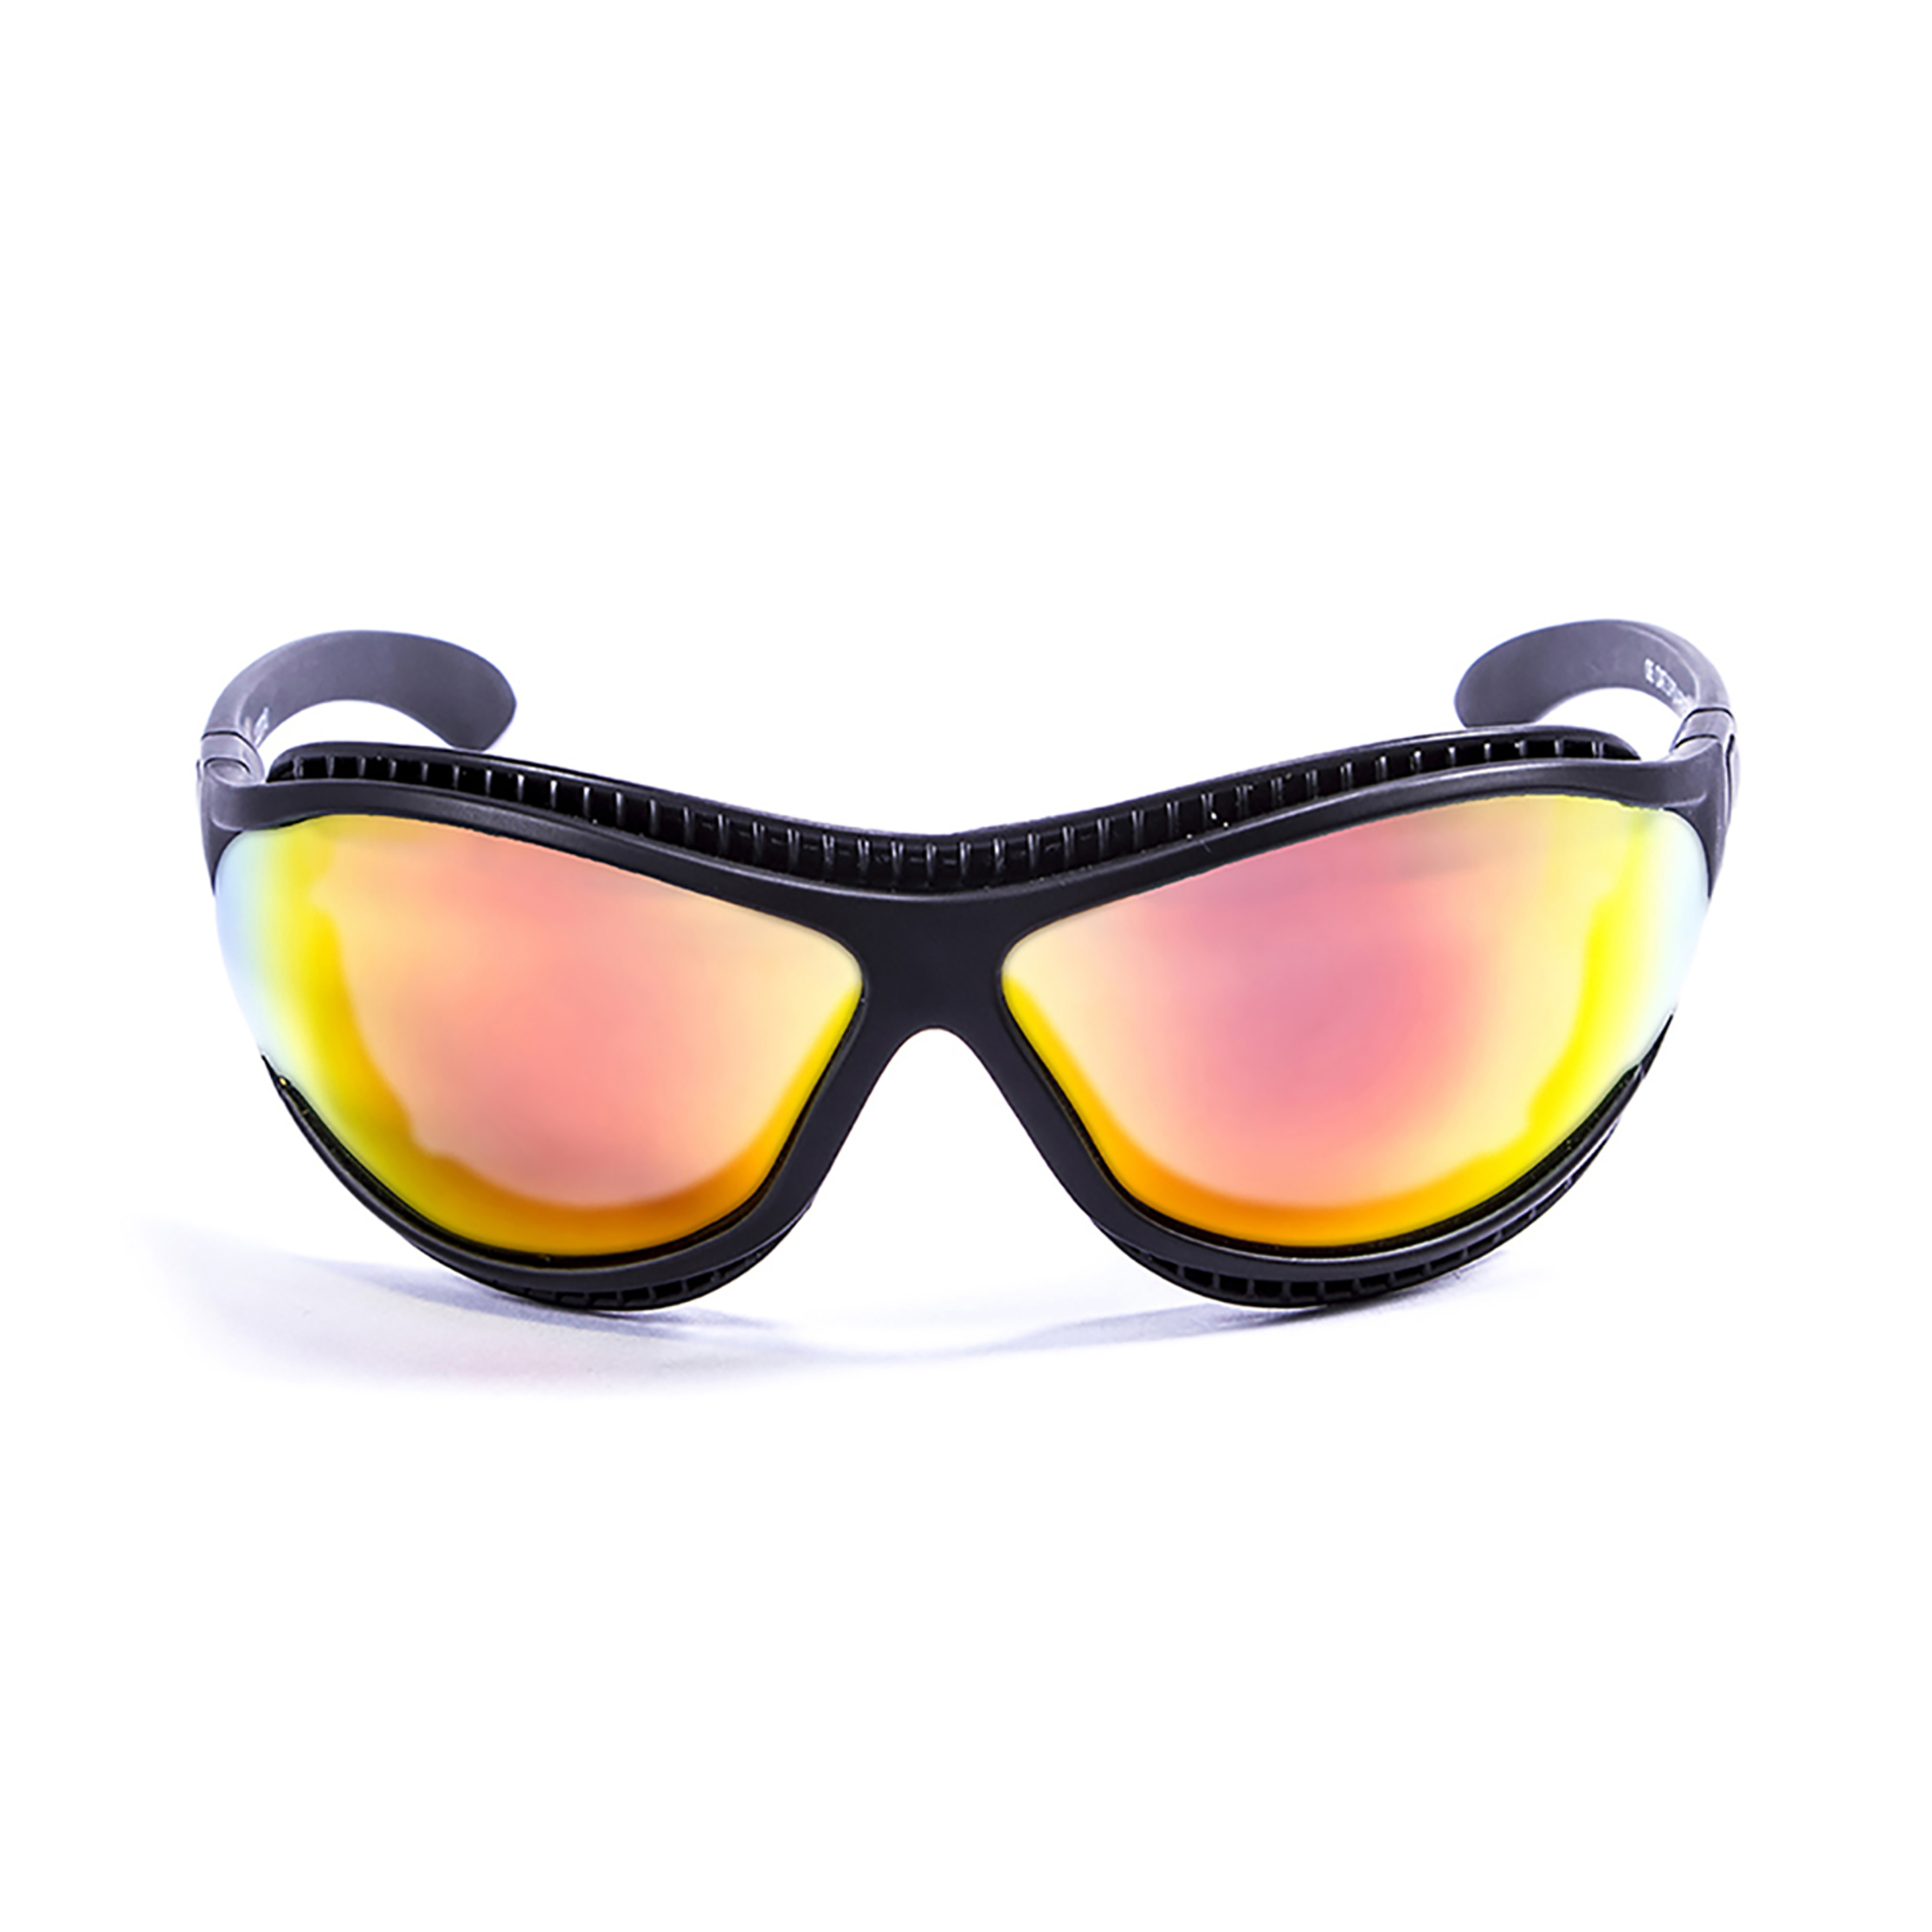 Gafas De Sol Técnicas Para La Práctica De Deportes De Agua Tierra De Fuego Ocean Sunglasses - negro - 